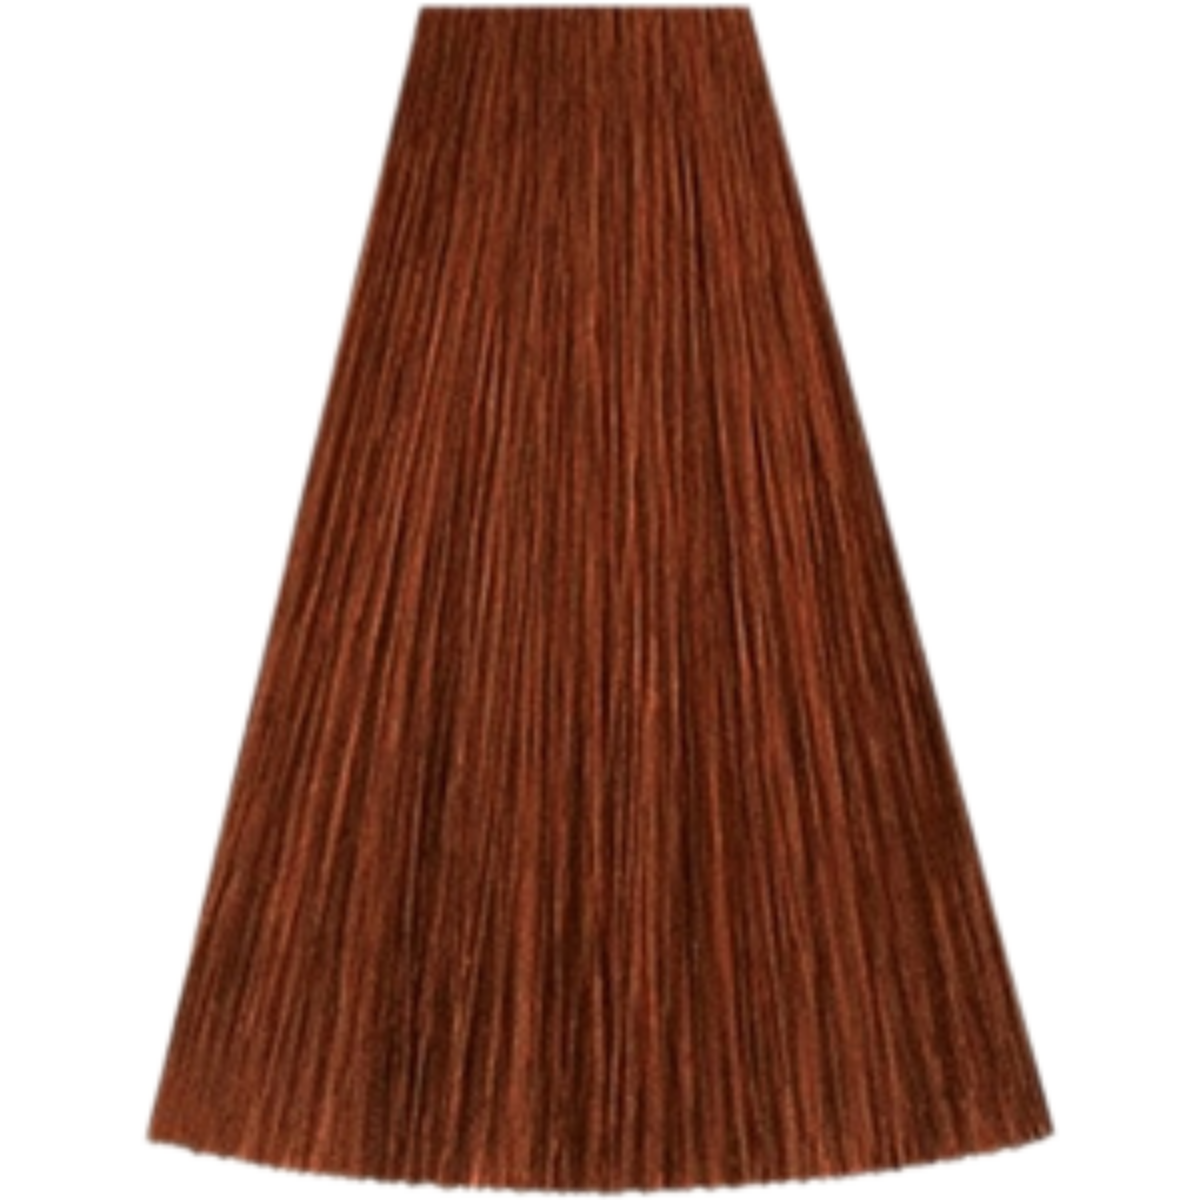 צבע שיער גוון 6/43 DARK BLONDE RED GOLD קאדוס KADUS צבע לשיער 60 גרם